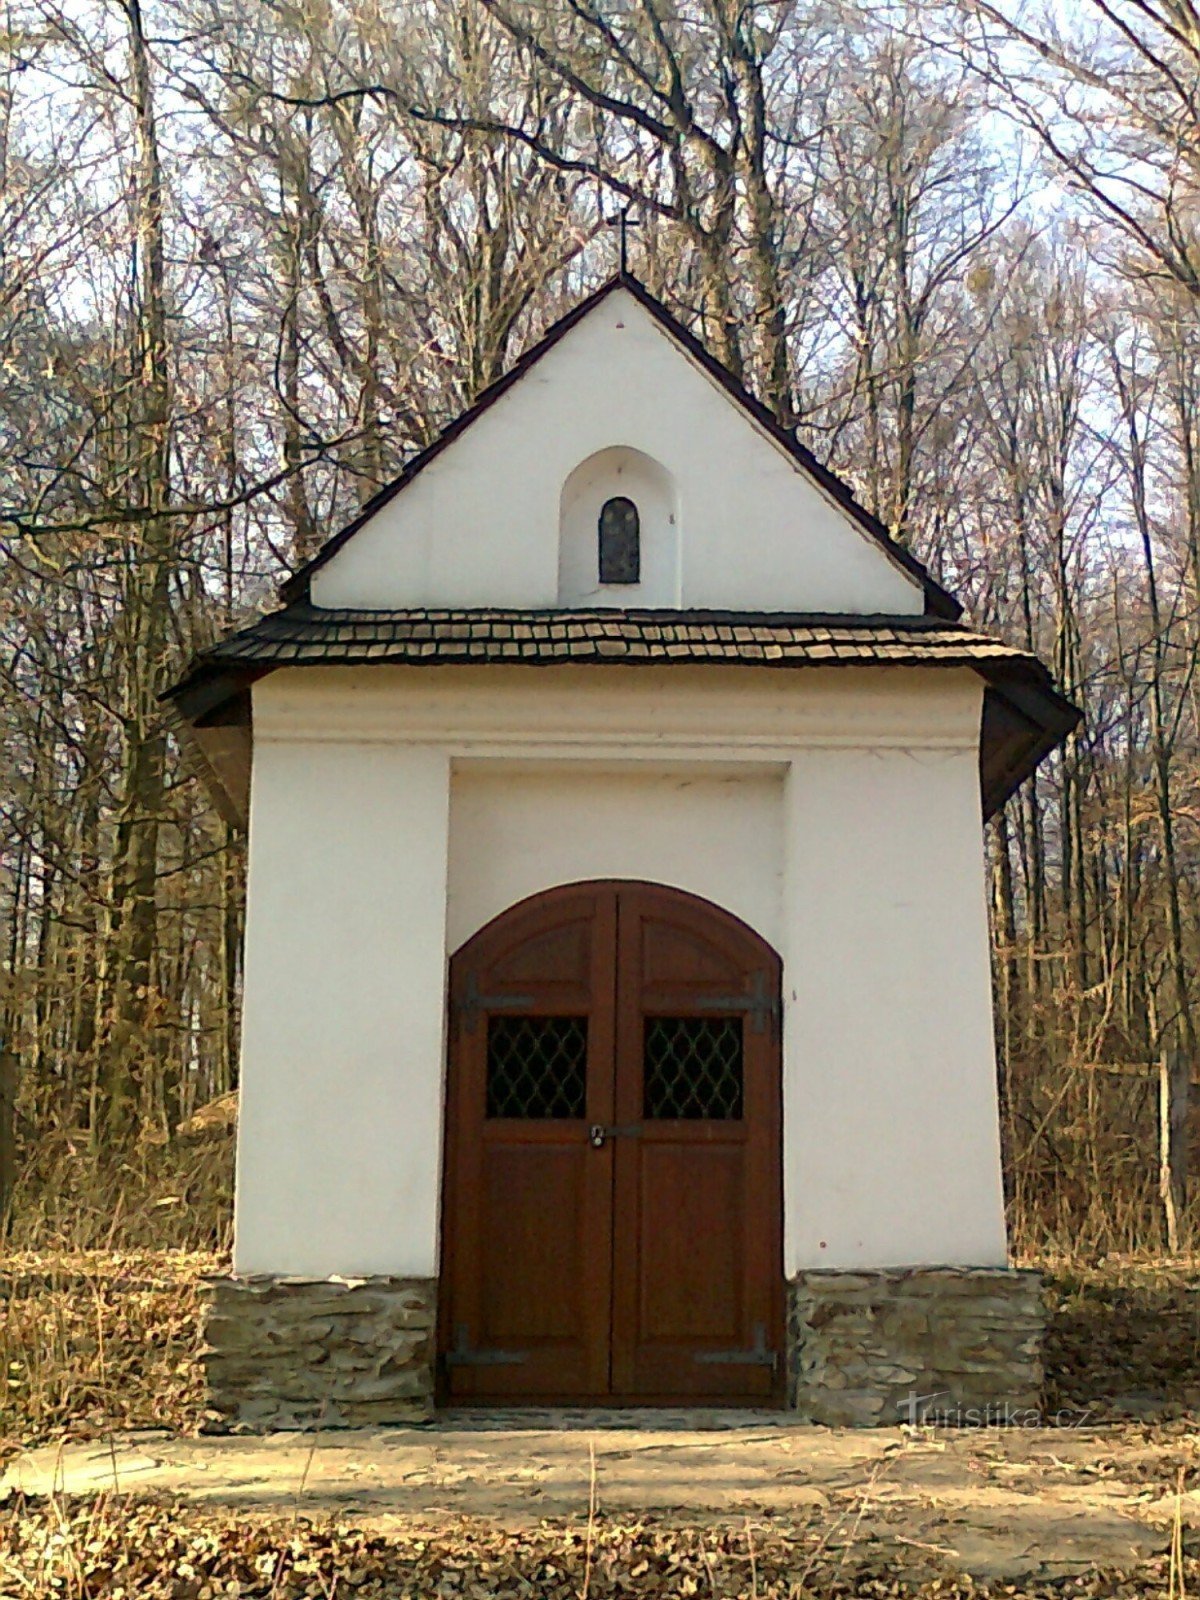 kapel ved St. Josefka